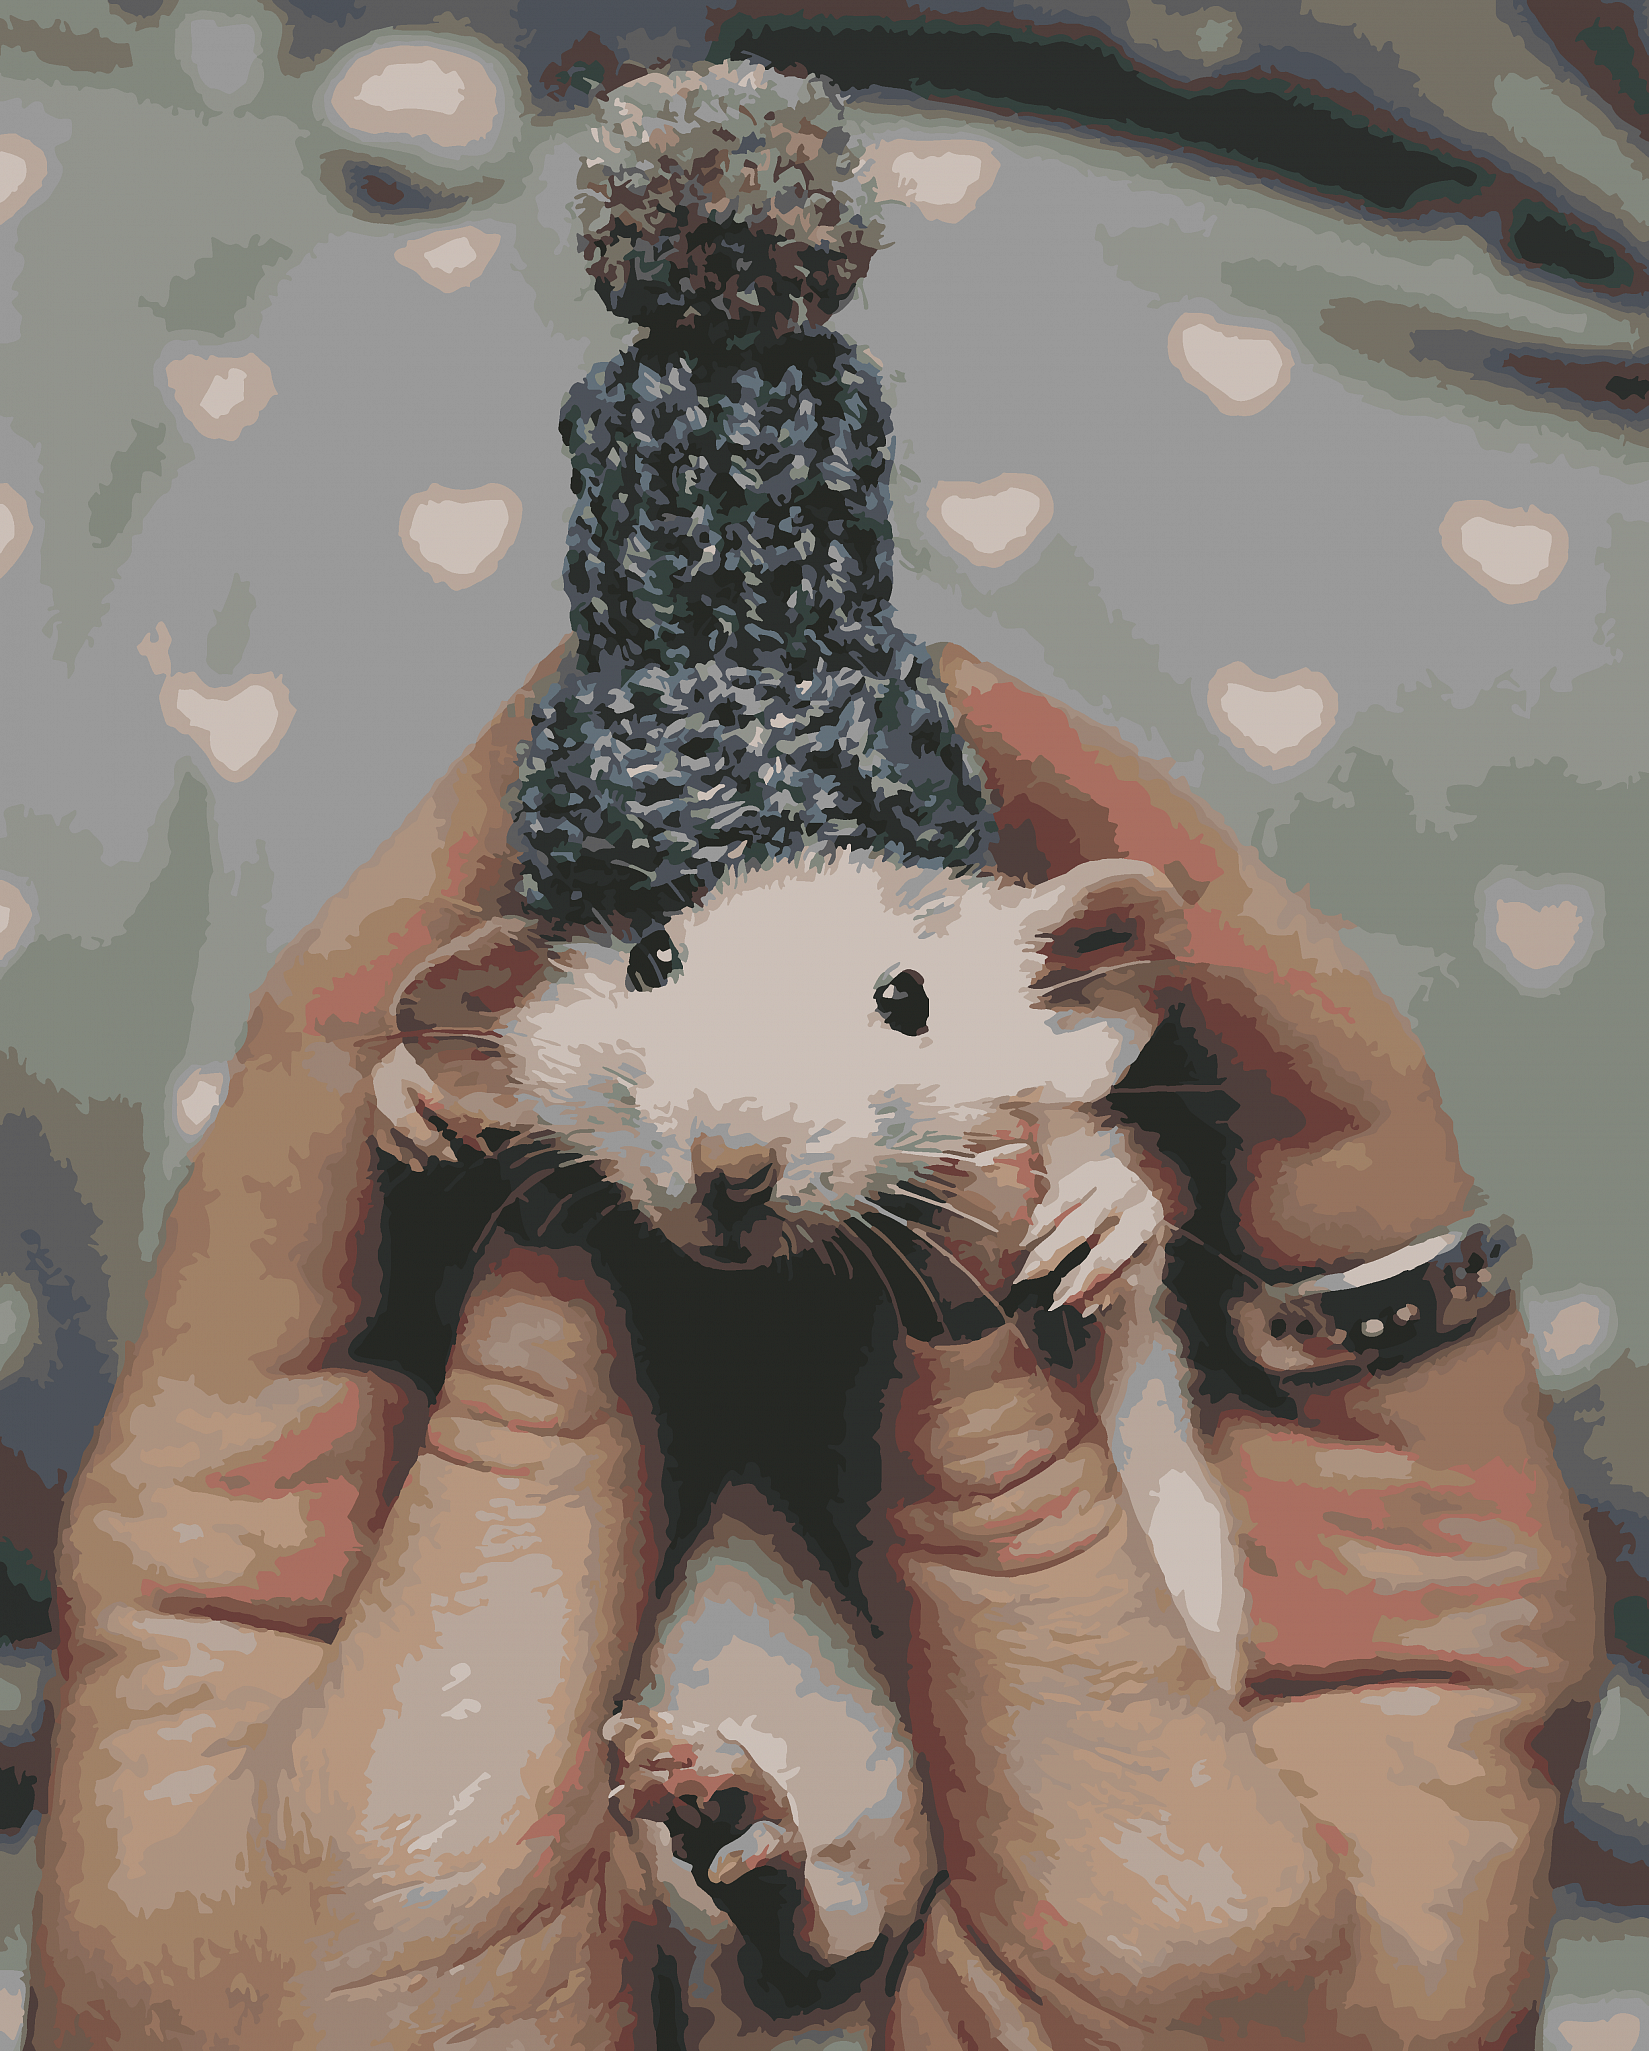 Милая мышь. Милые мышки. Милый мышонок. Мышь в руке. Милые крыски Эстетика.